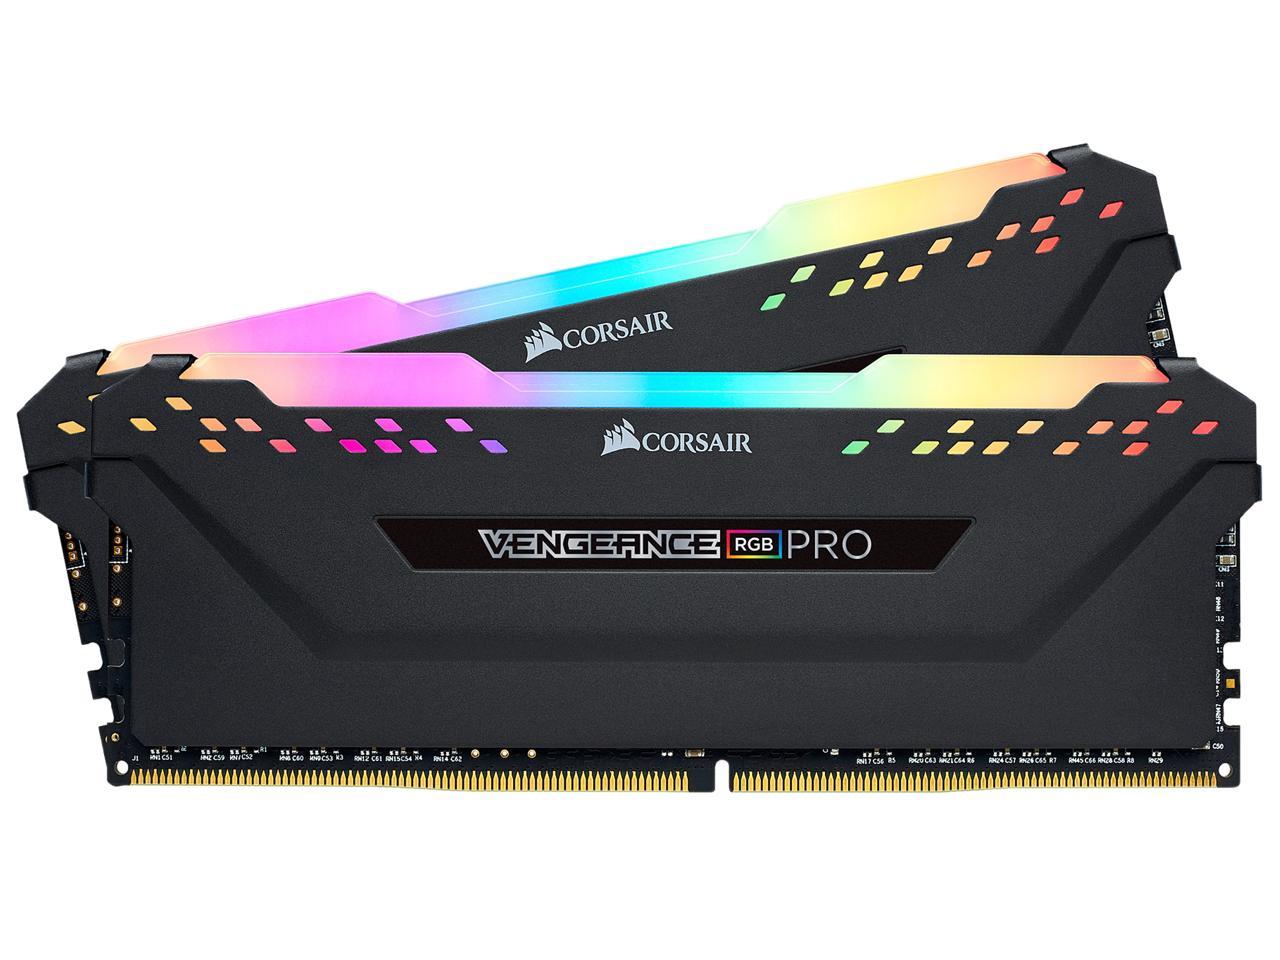 CORSAIR Vengeance RGB Pro 32GB (2 x 16GB) DDR4 RAM - Newegg.com